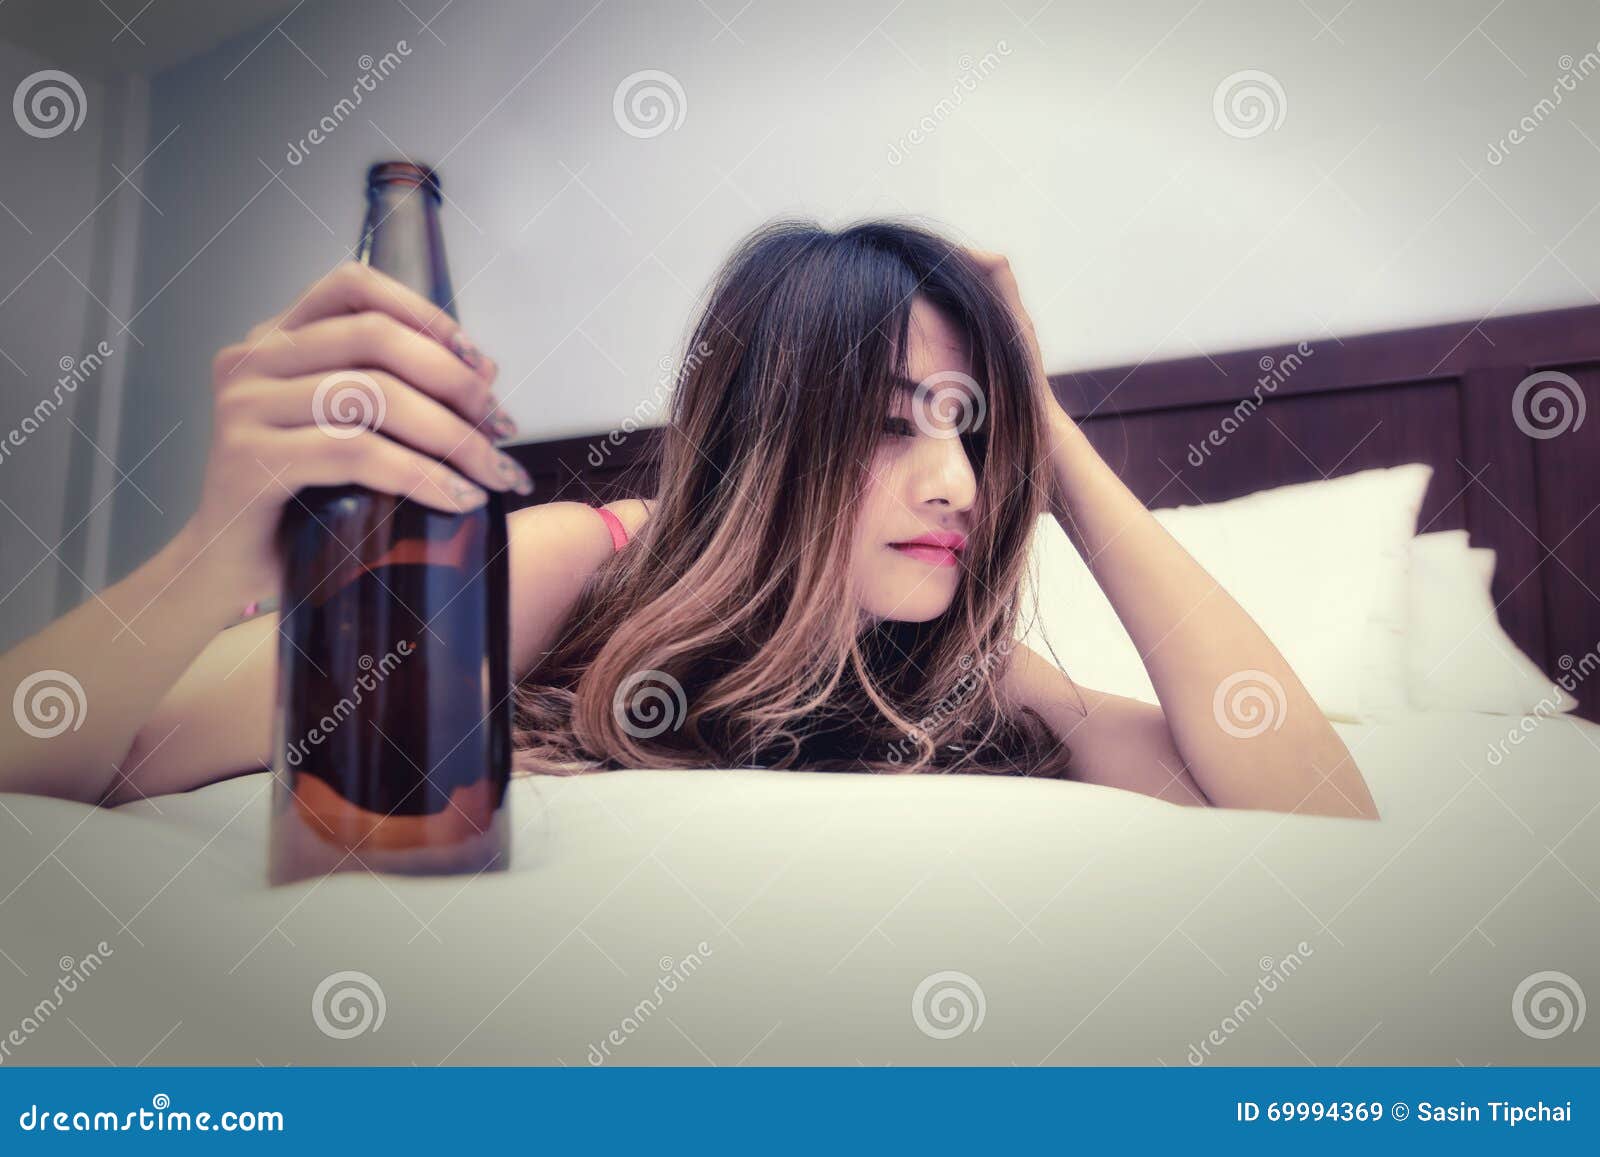 Betrunkene Frau Auf Dem Bett Mit Flasche Stockbild - Bild von schön ...